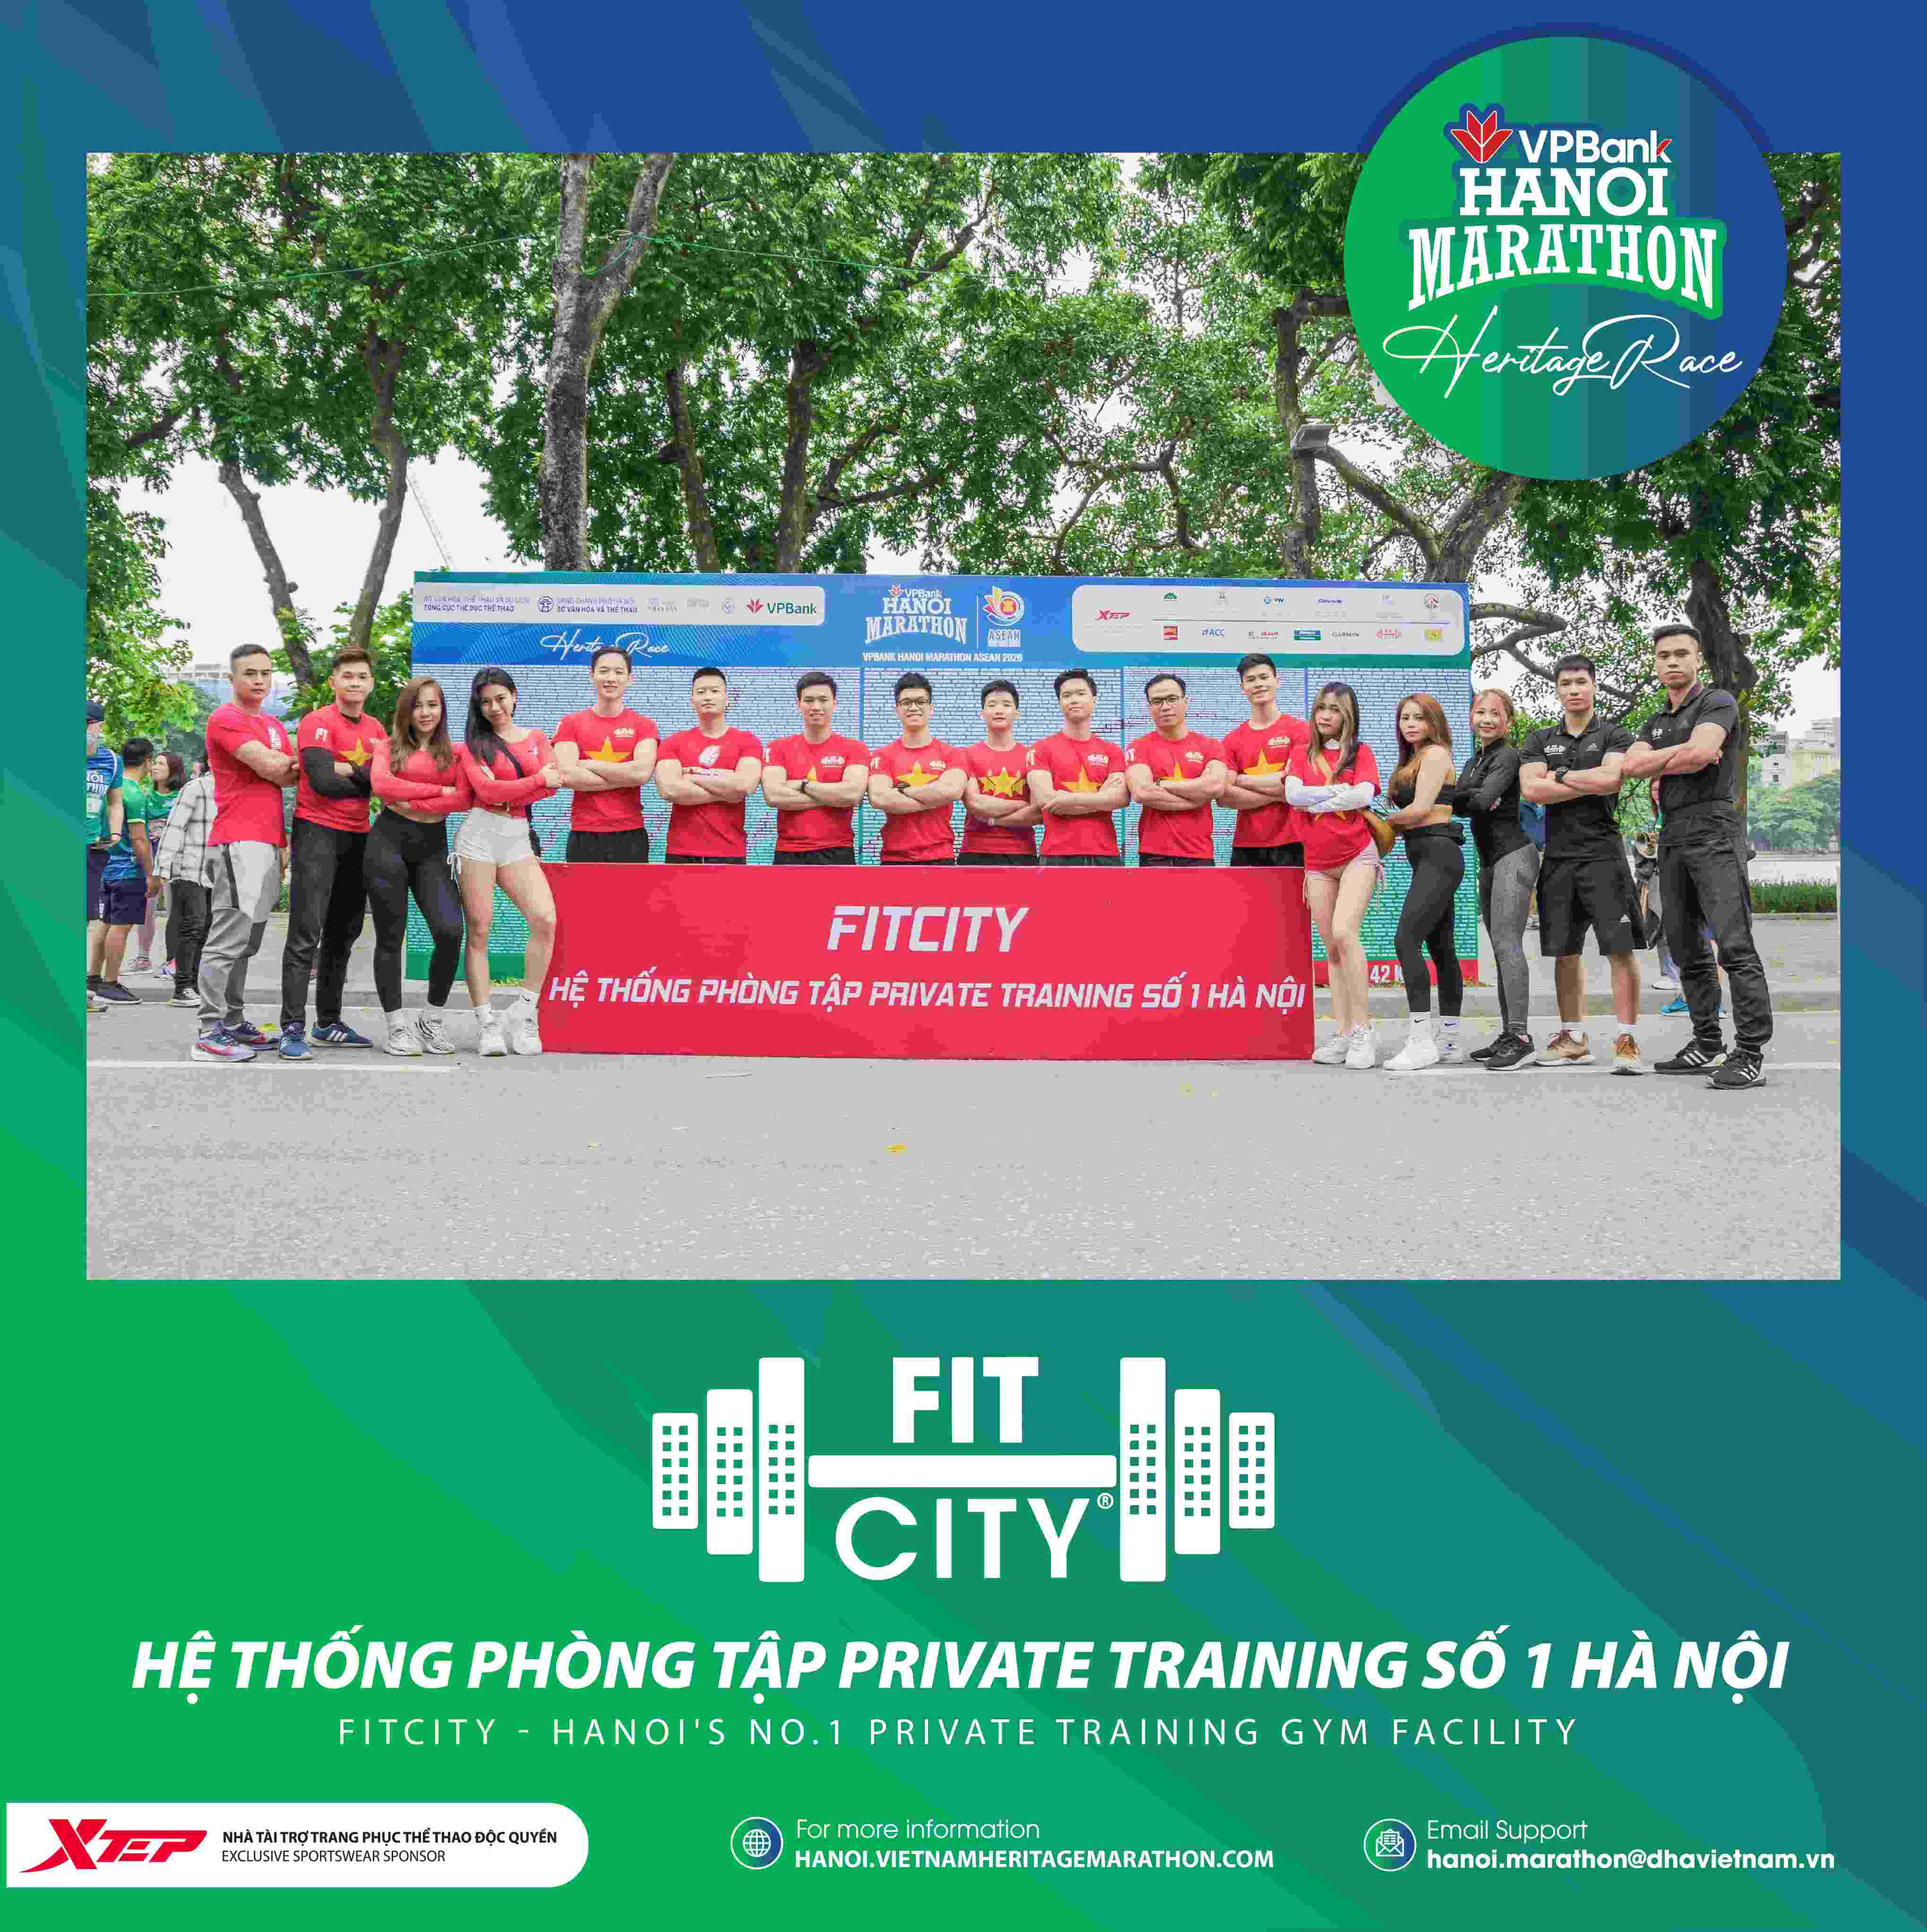 Fitcity Chăm Sóc Đôi Chân Runner VPBank Hanoi Marathon 2021